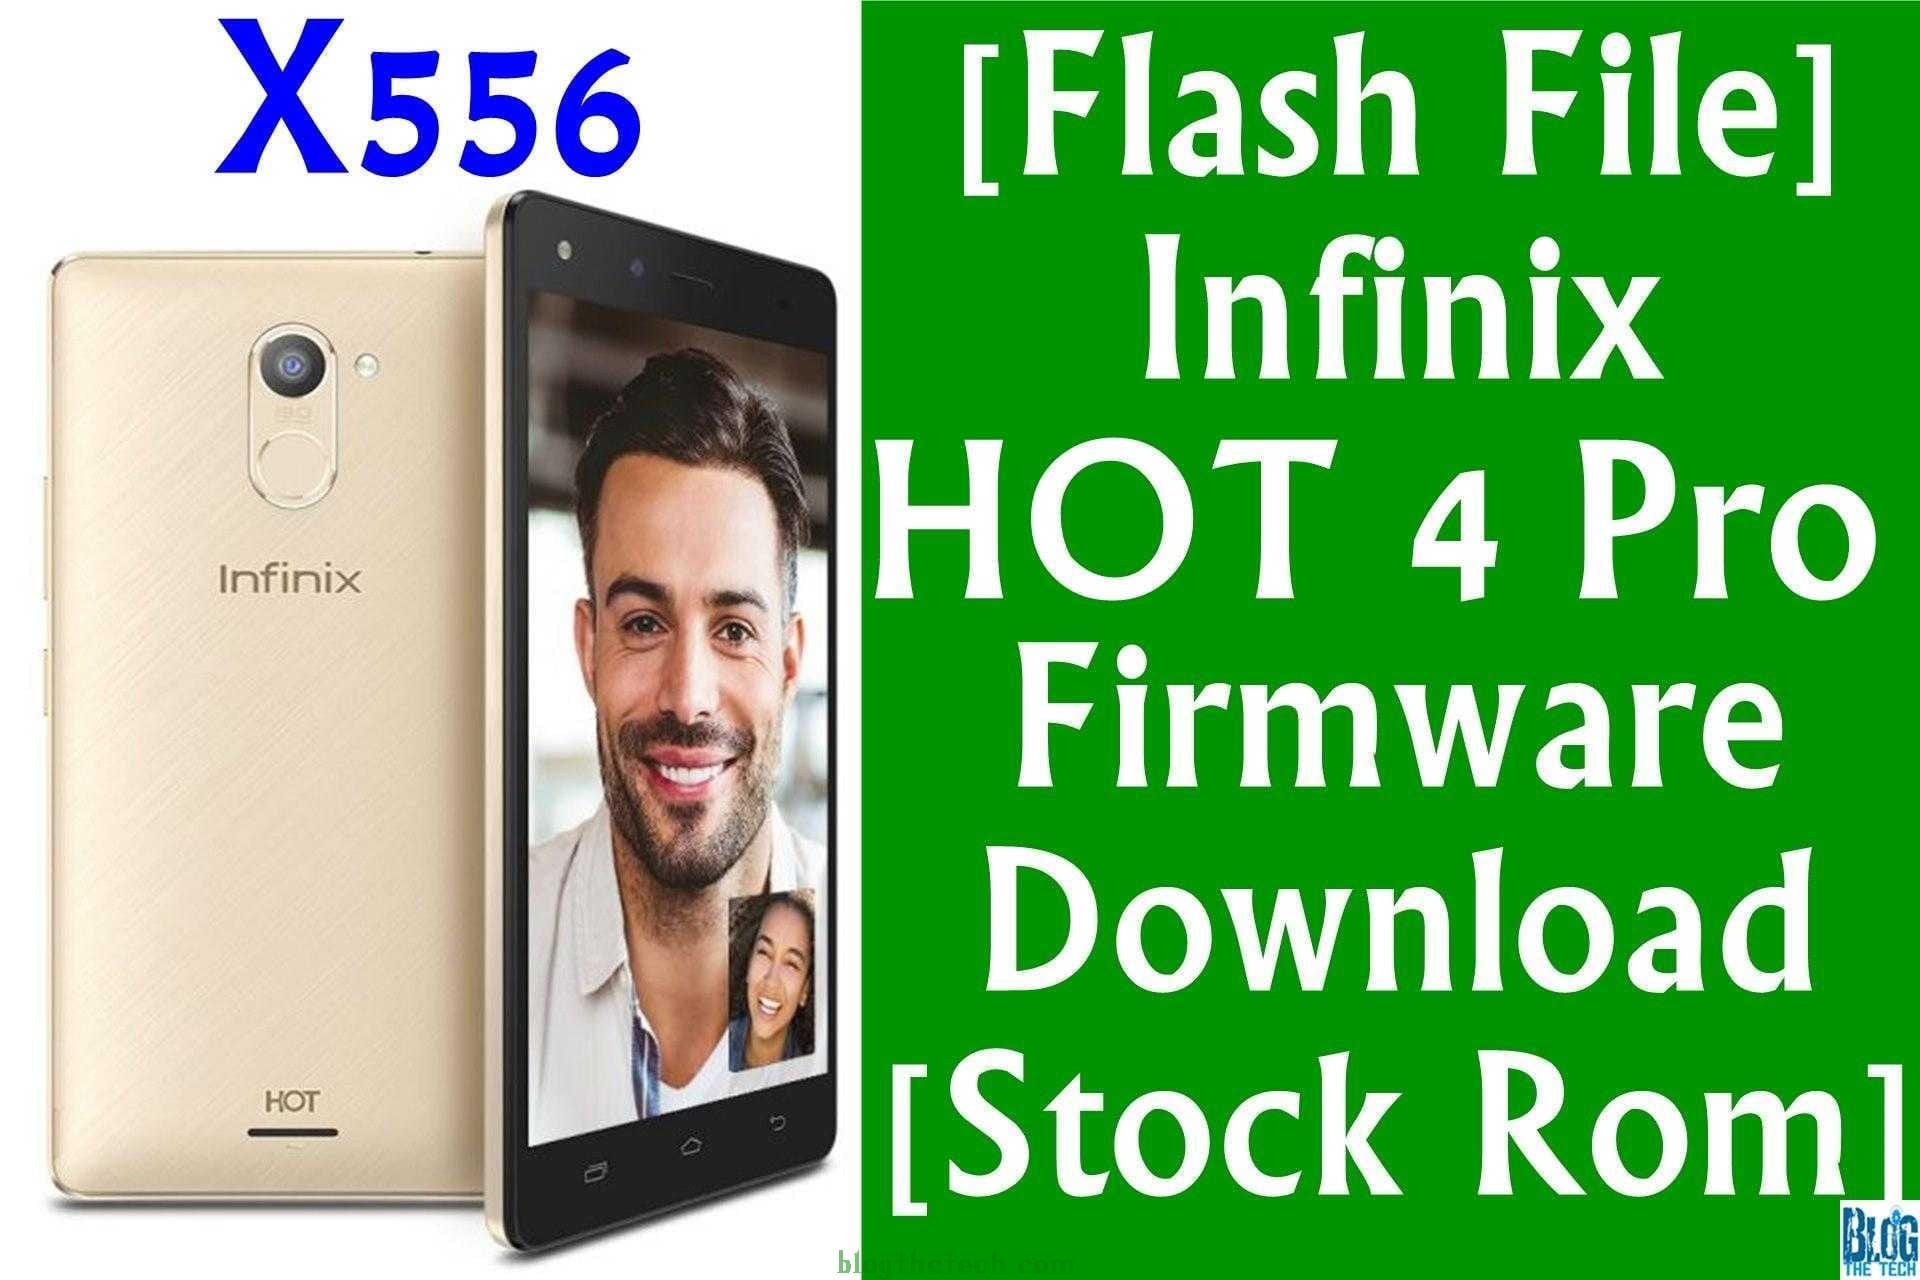 Infinix Hot 4 Pro X556